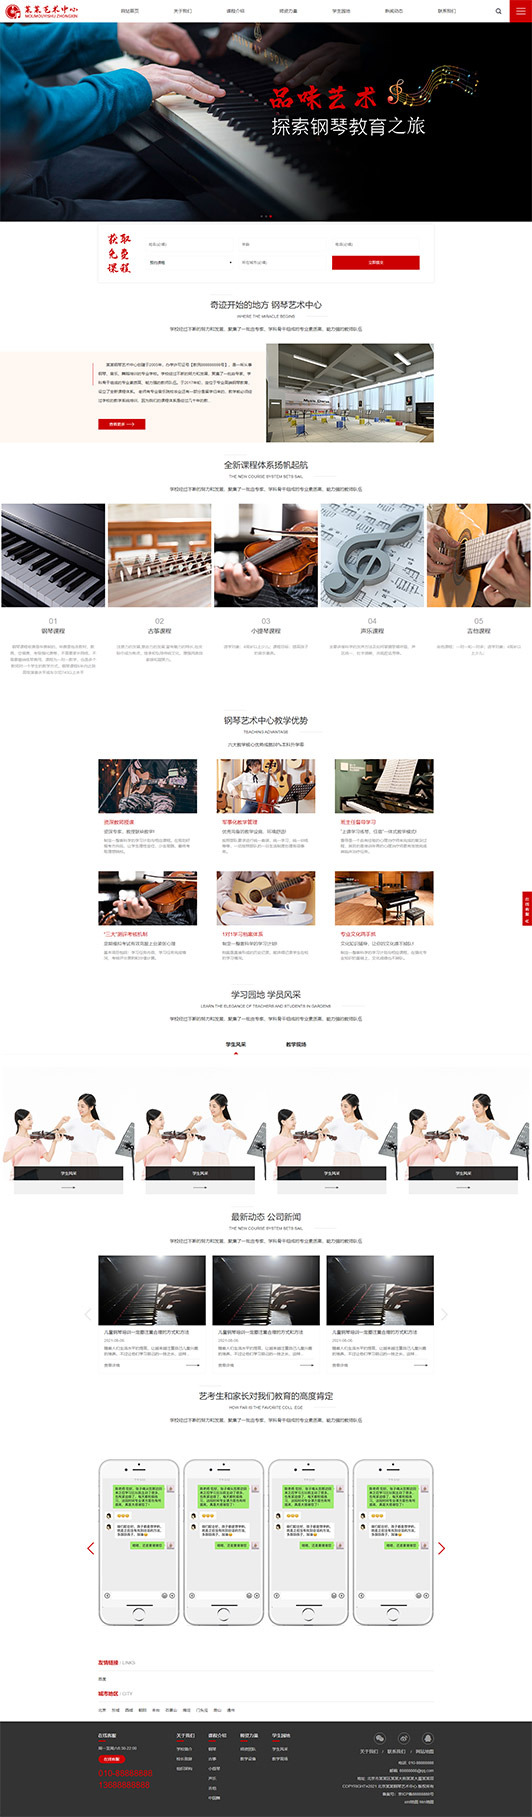 焦作钢琴艺术培训公司响应式企业网站